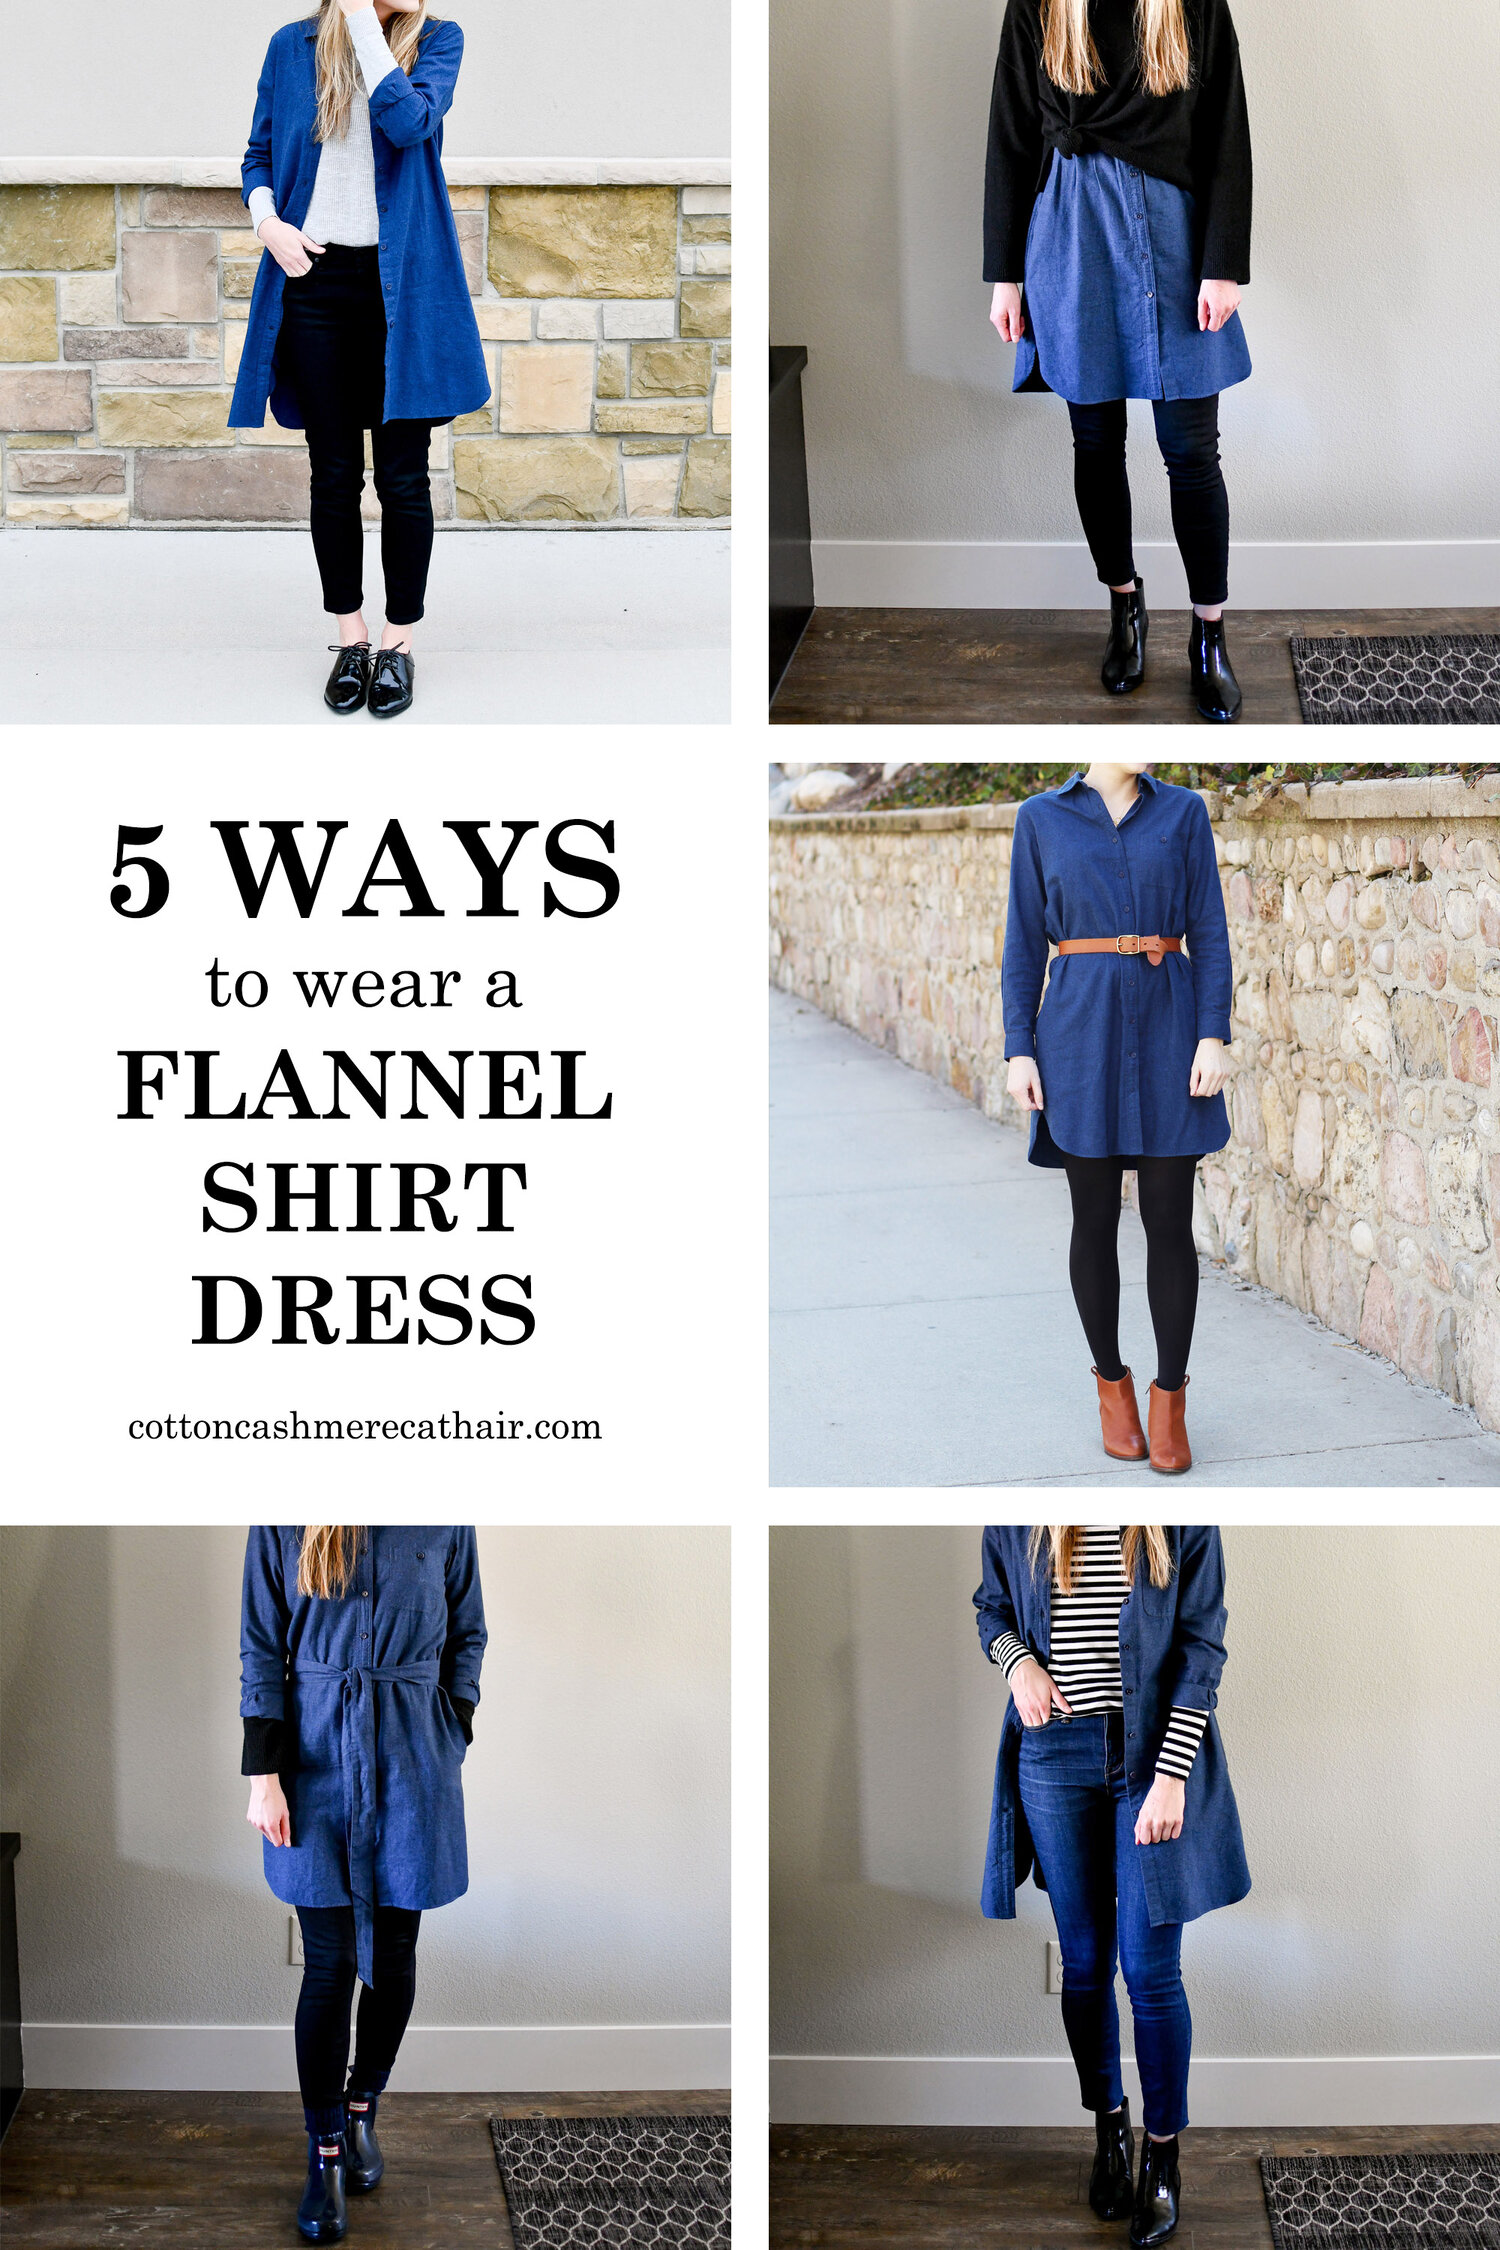 to wear flannel